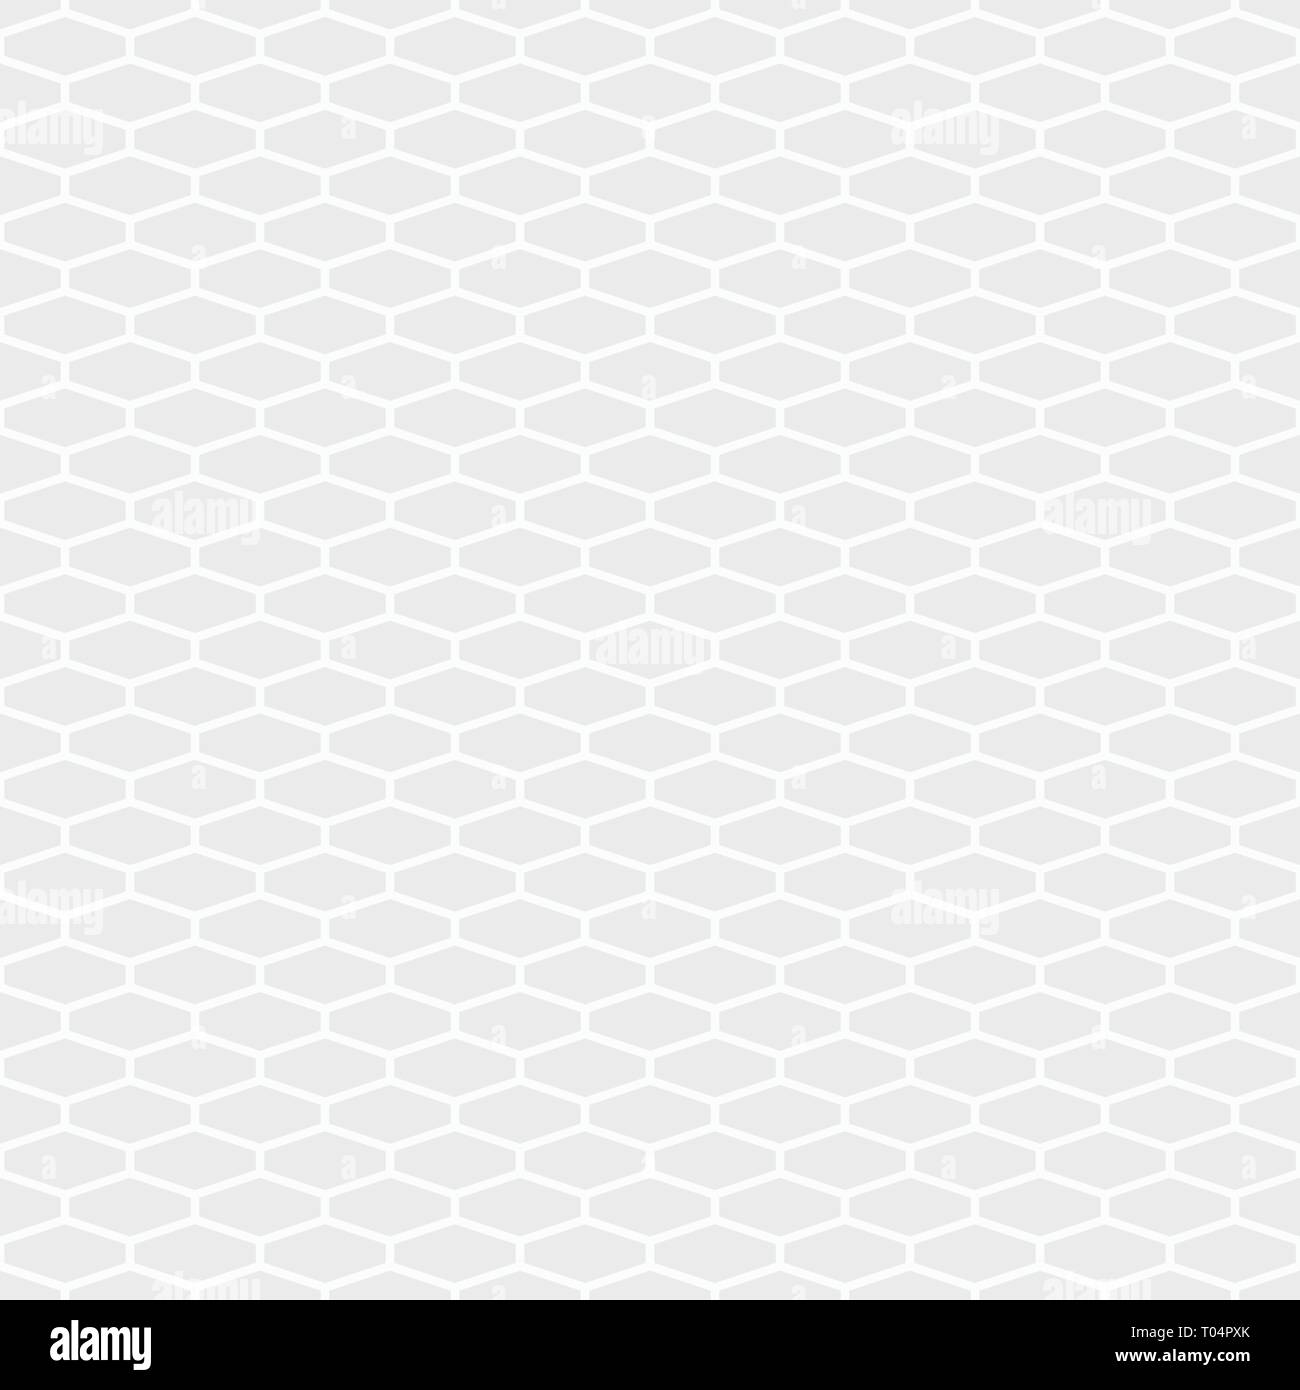 Zusammenfassung nahtlose Muster der langgestreckten Sechsecks Fliesen. Weiße und graue geometrische Struktur. Hexagonal grid Design. Geometrische Tapeten. Fliesen Motiv. Stock Vektor